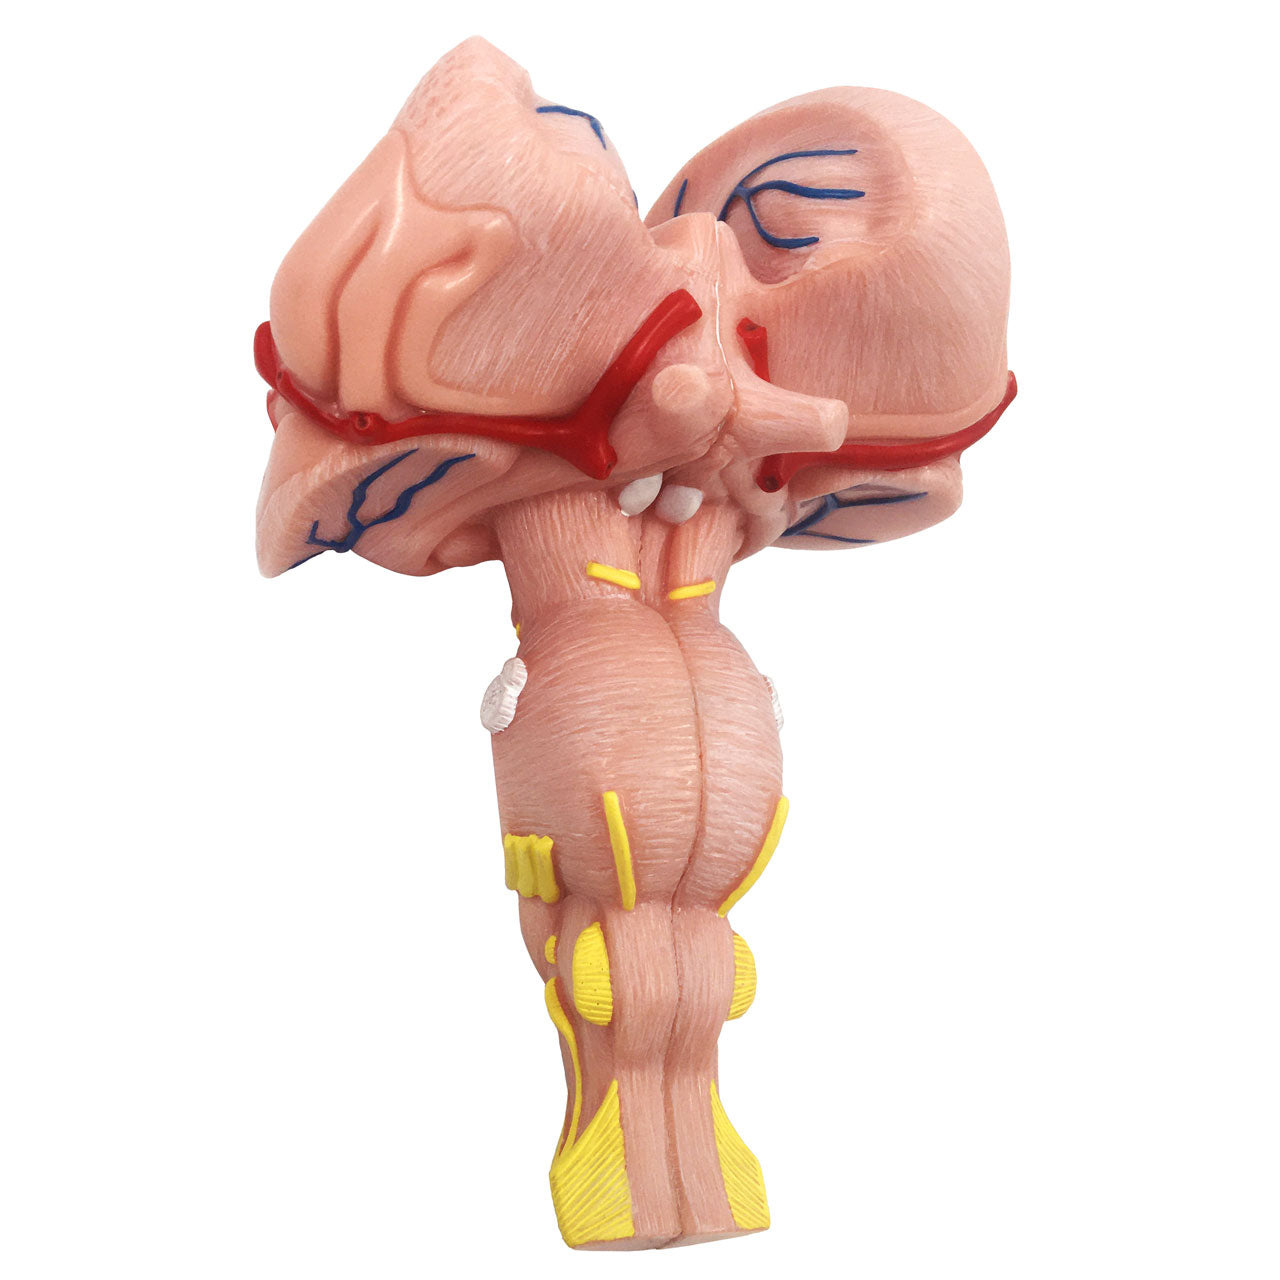 labeled brain stem model